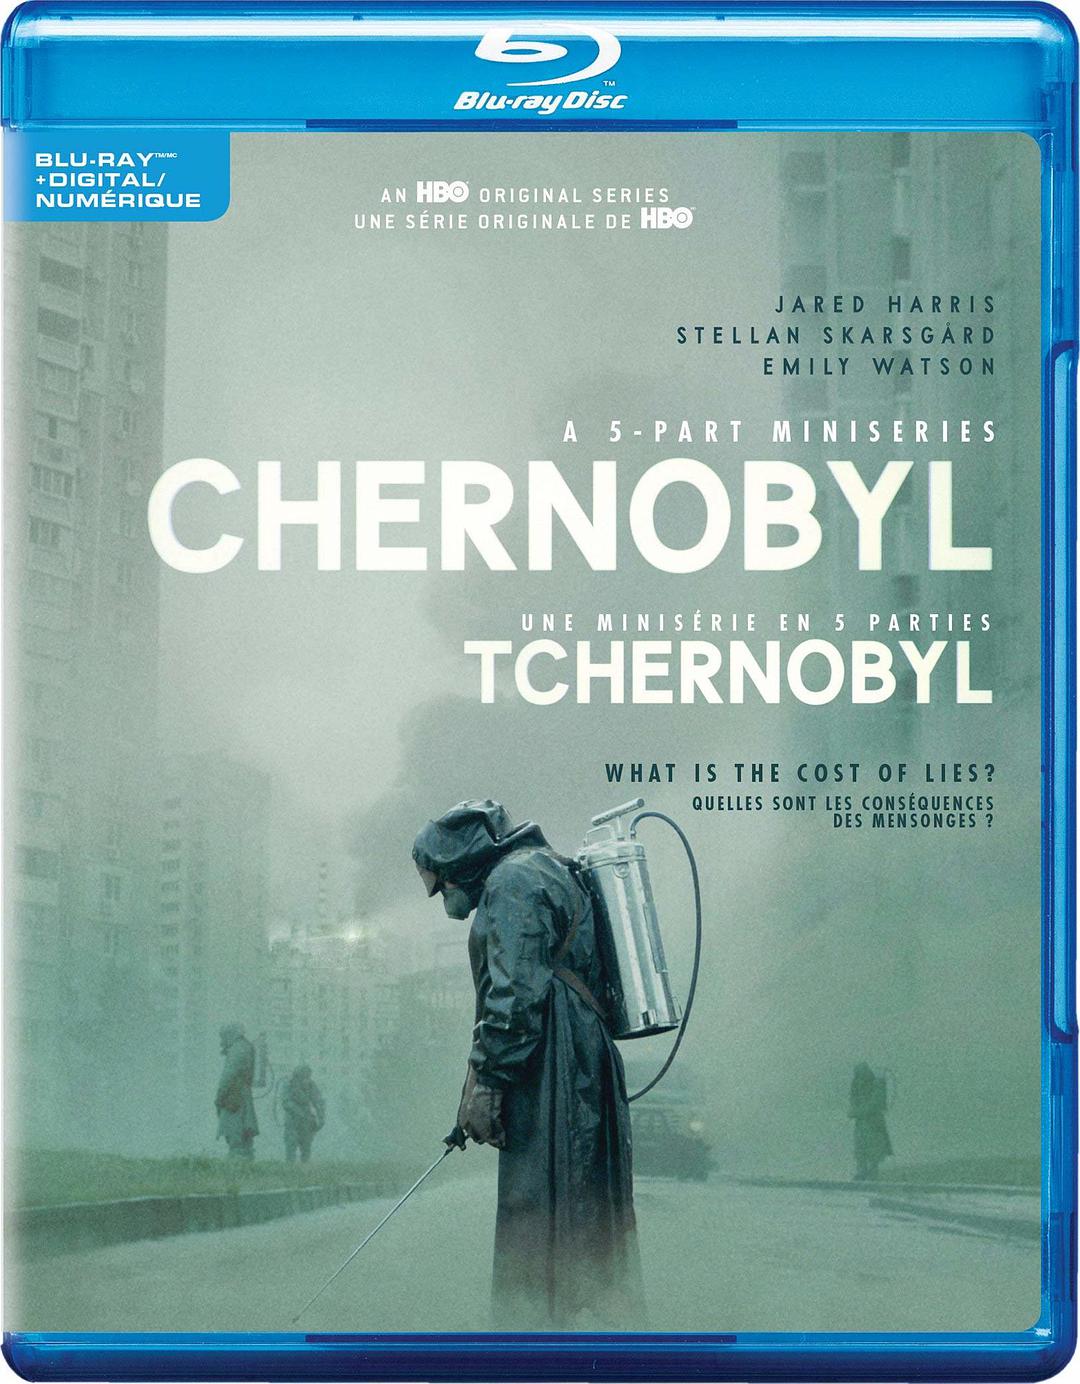 [切尔诺贝利].Chernobyl.D1.2019.UHD.BluRay.2160p.HEVC.DTS-HD.MA.5.1-BHYS@CHDBits   87.91G-2.jpg